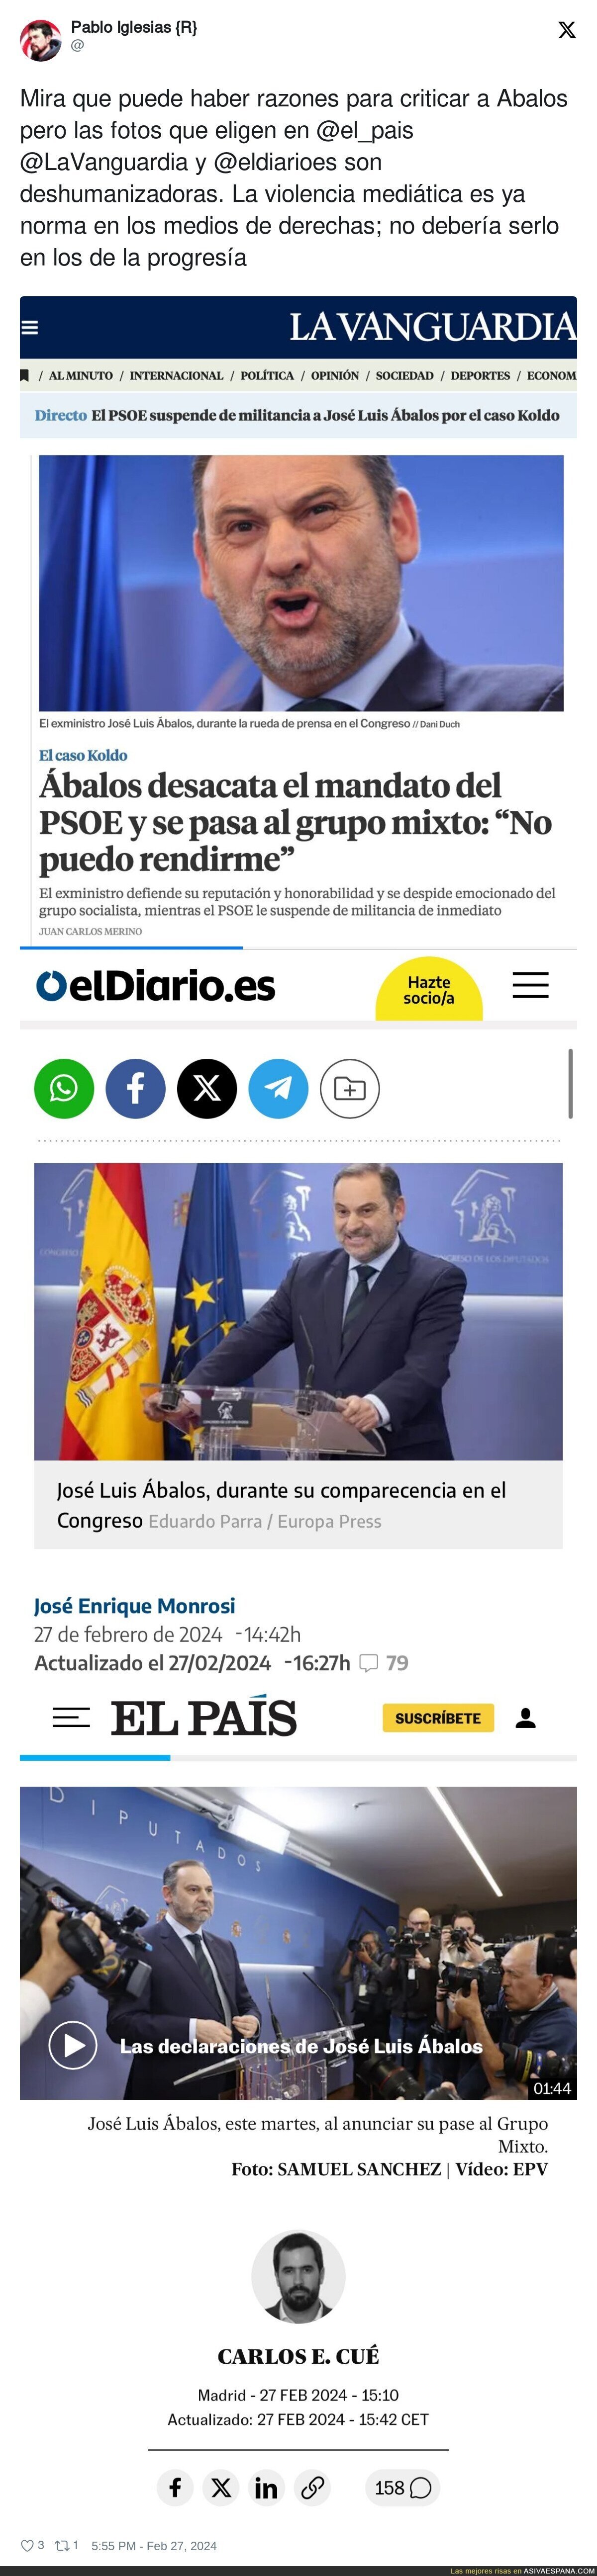 Pablo Iglesias demuestra como funciona la prensa española